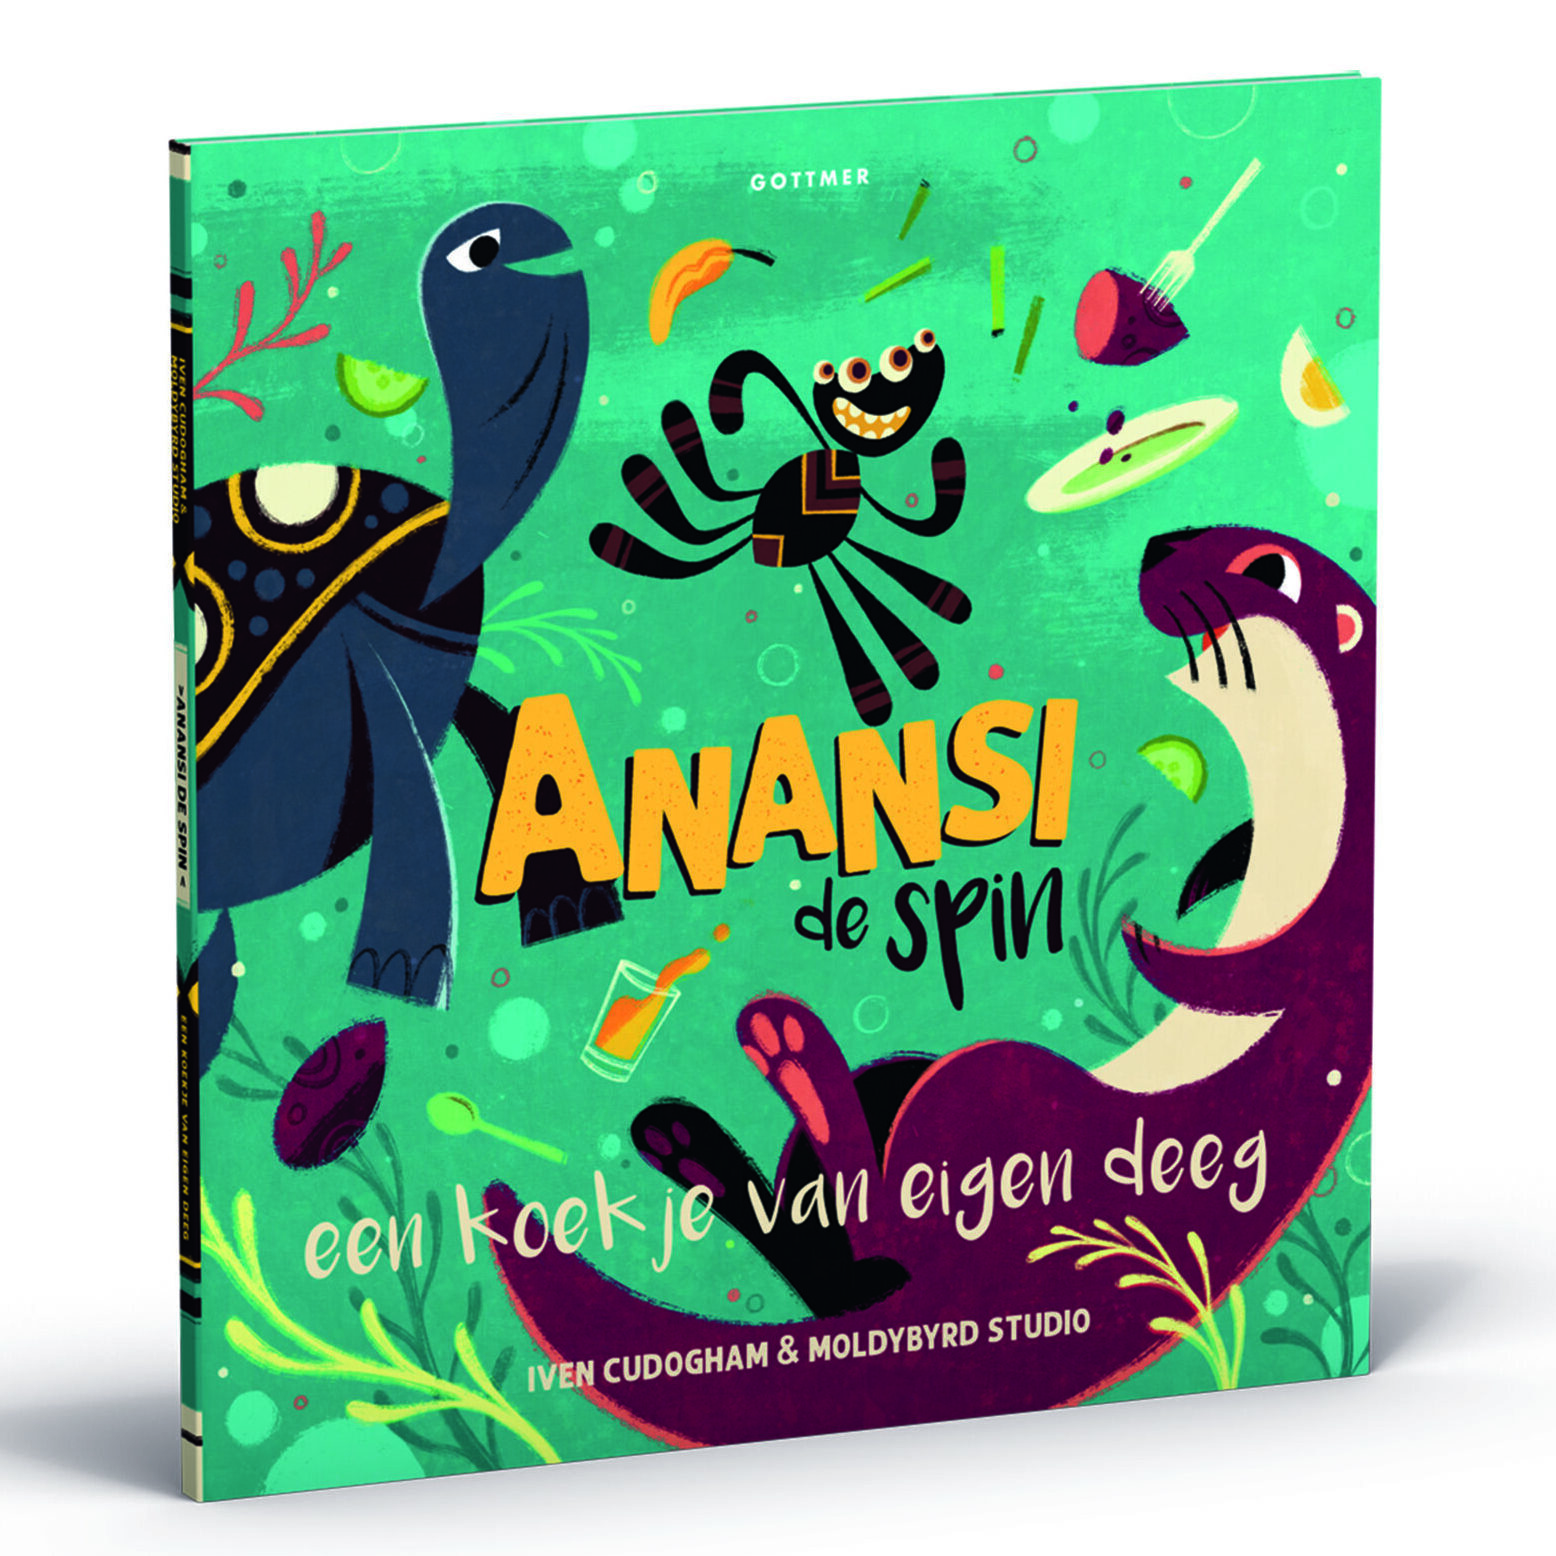 Het derde Prentenboek van Anansi de spin is er!